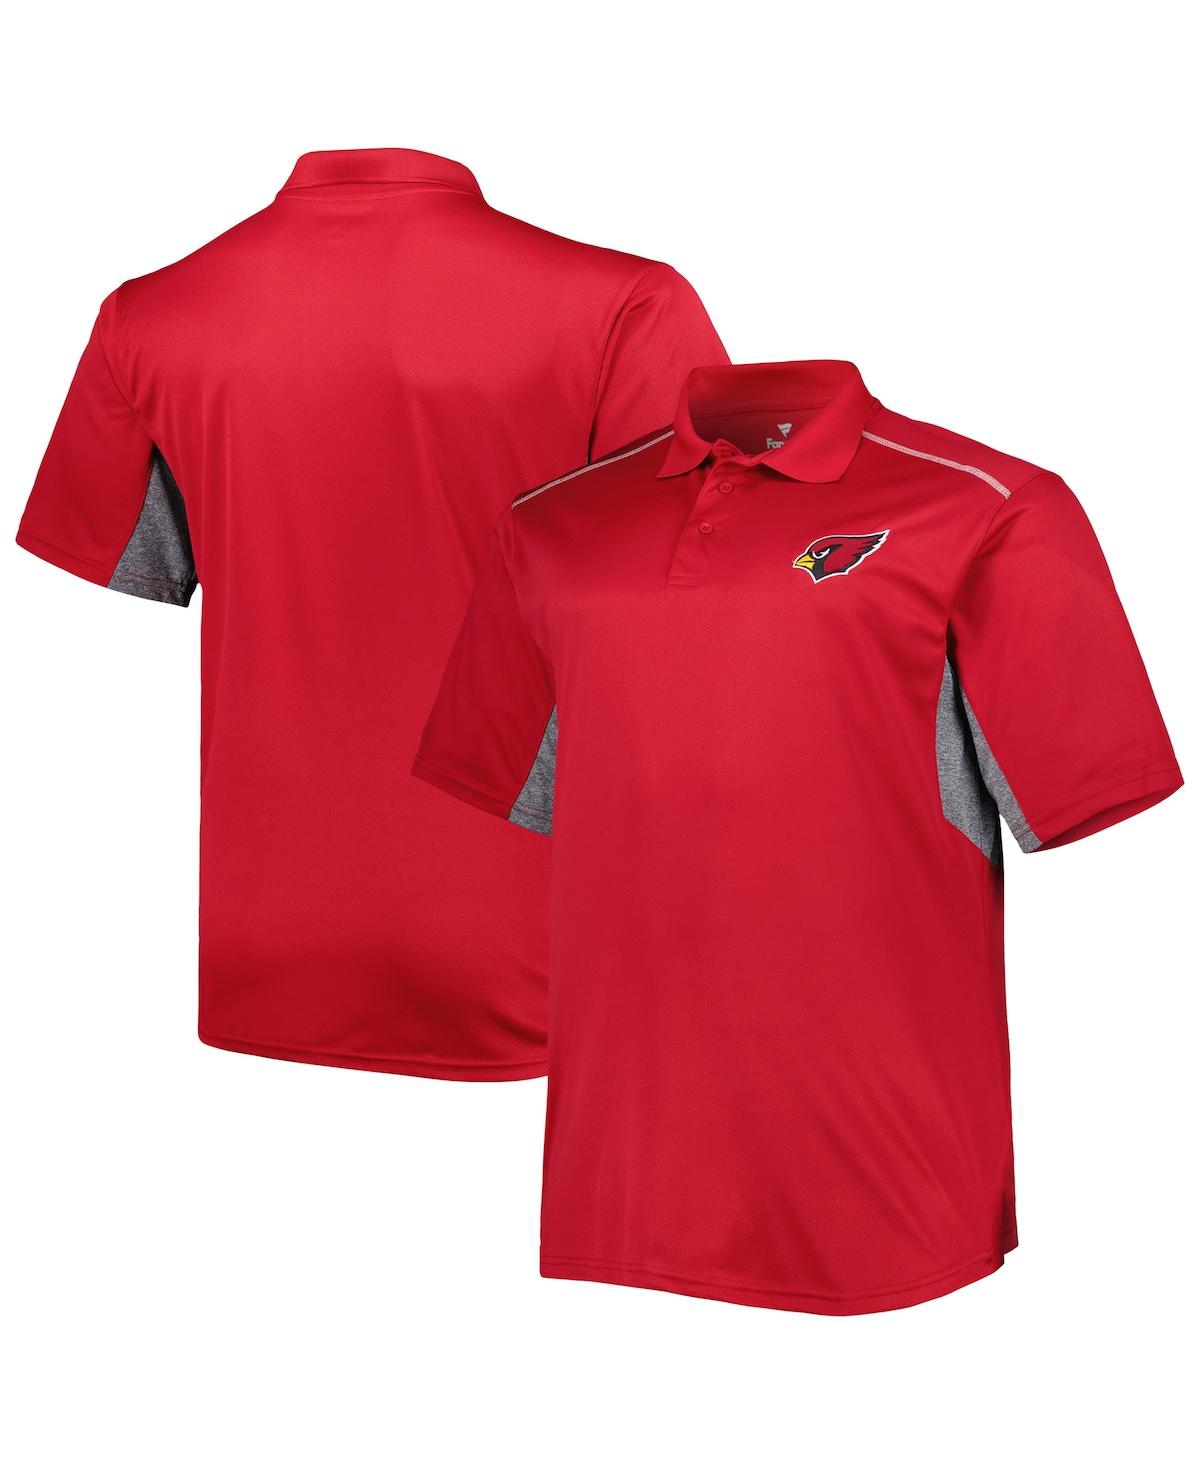 Fanatics Men's Cardinal Arizona Cardinals Big And Tall Team Color Polo Shirt